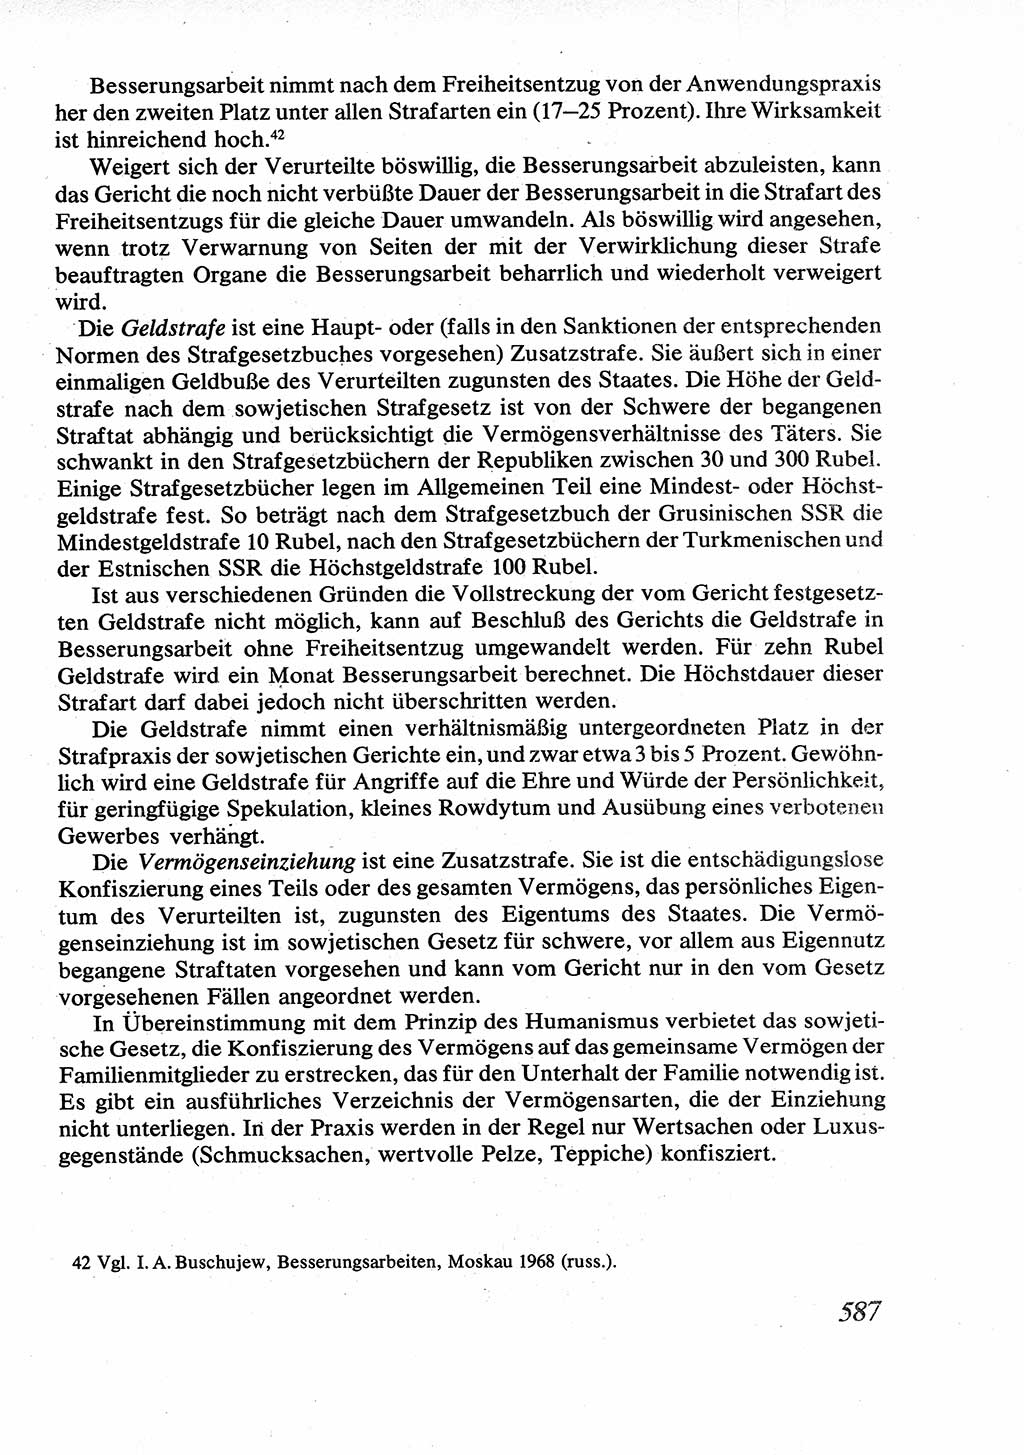 Strafrecht [Deutsche Demokratische Republik (DDR)], Allgemeiner Teil, Lehrbuch 1976, Seite 587 (Strafr. DDR AT Lb. 1976, S. 587)